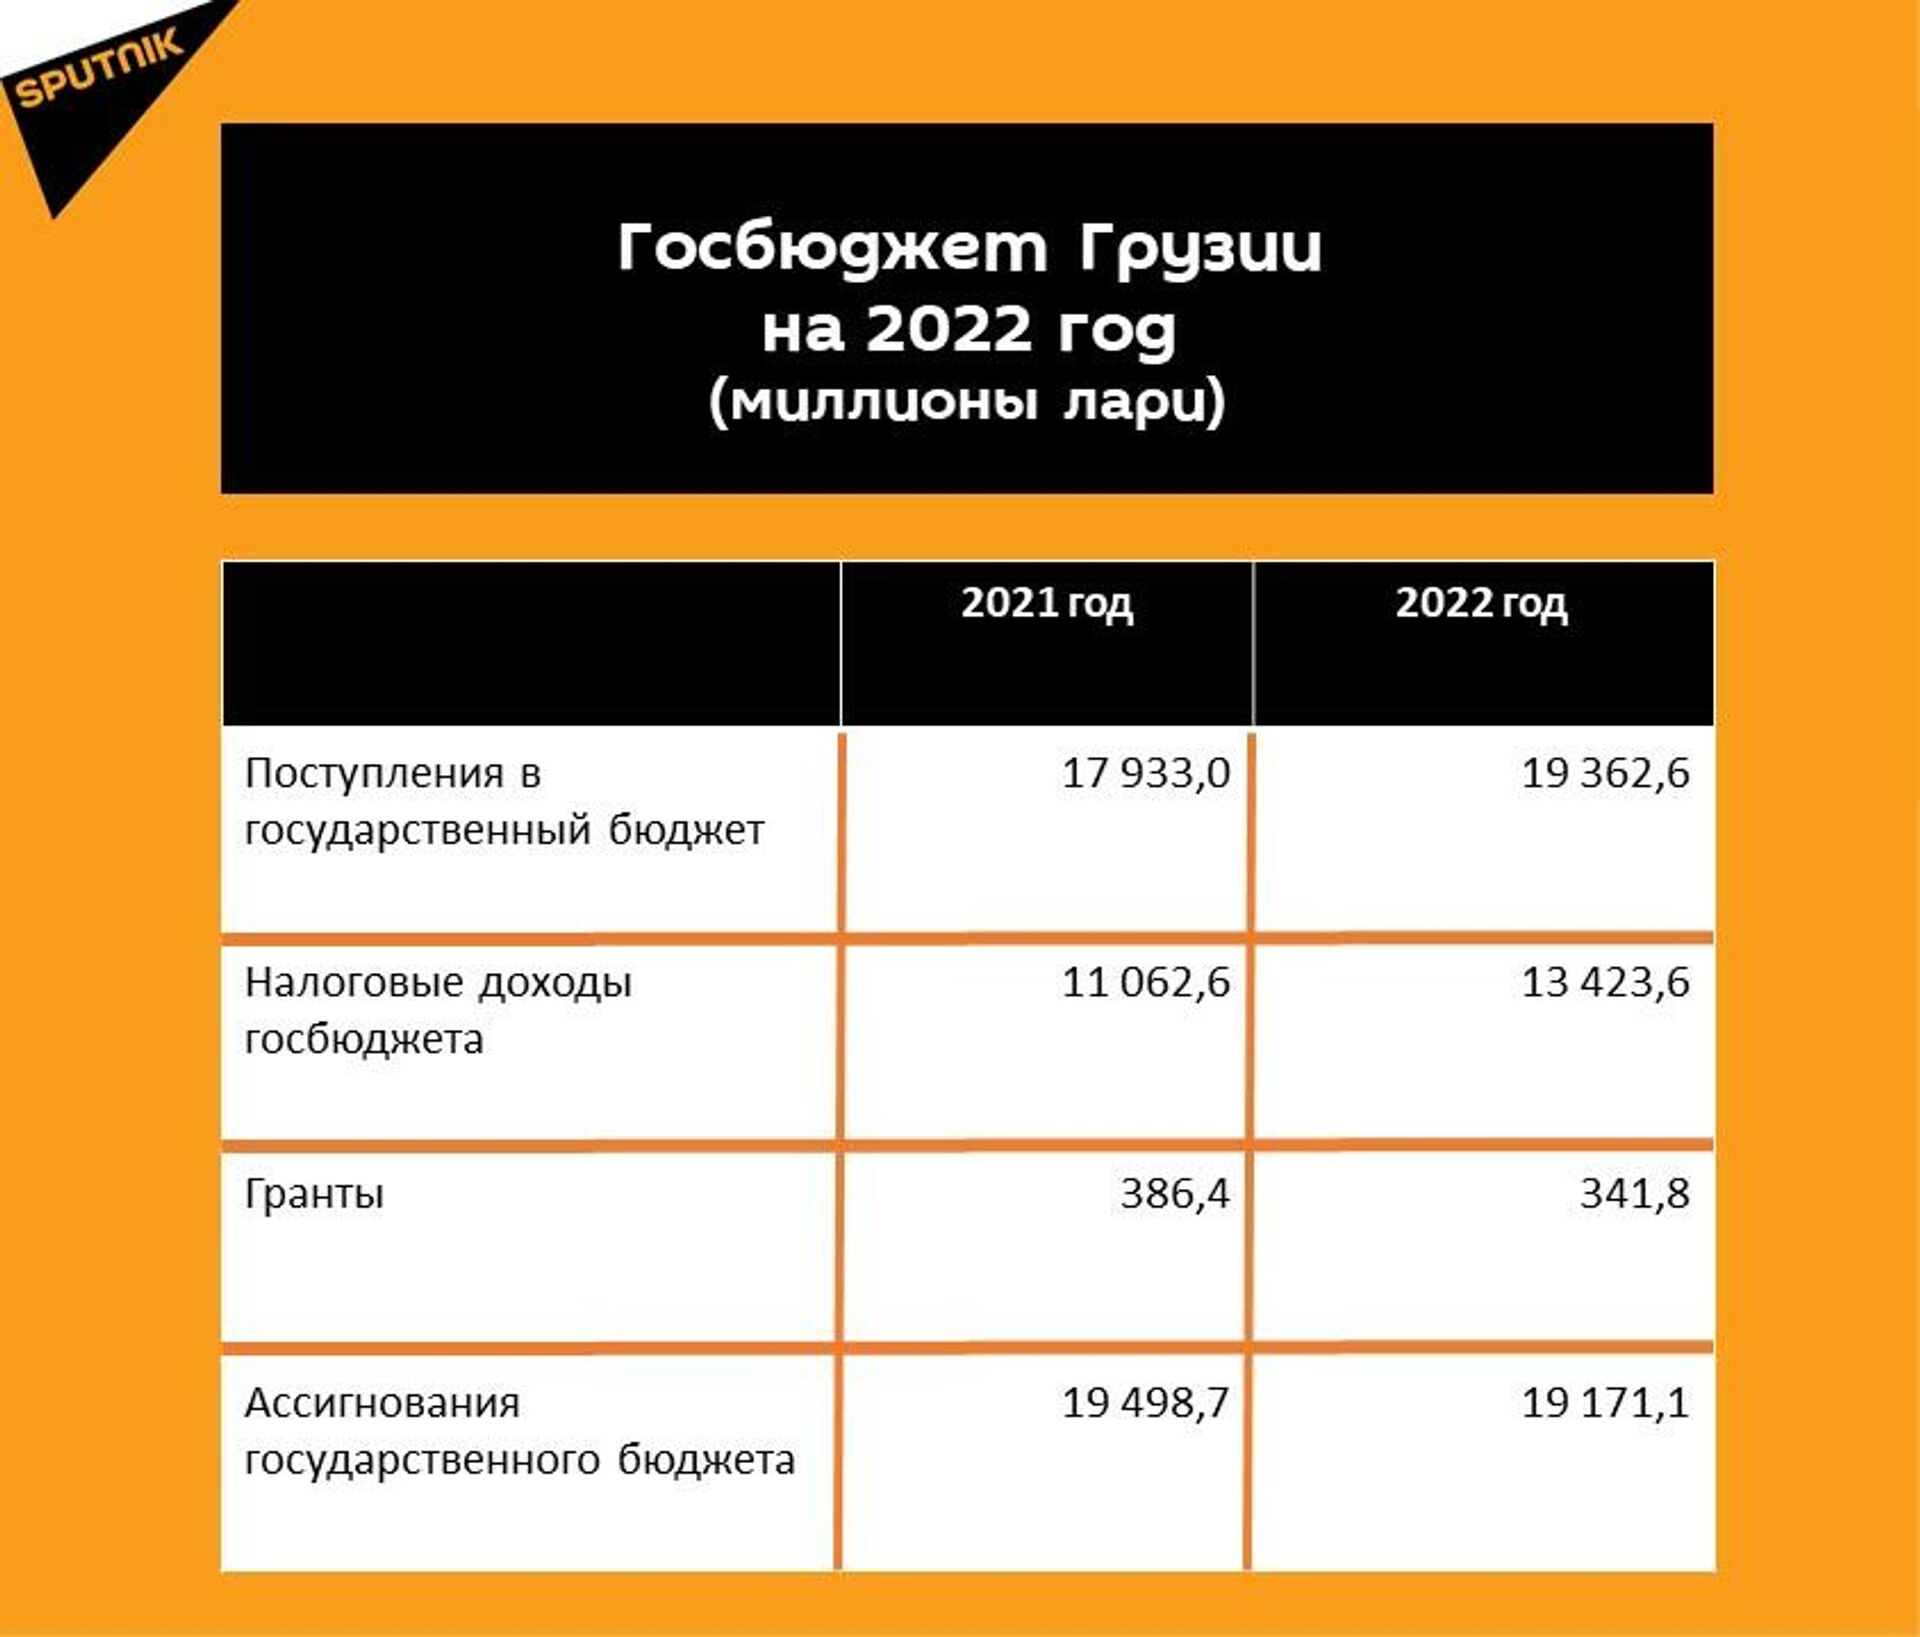 Прогнозные показатели госбюджета Грузии на 2022 год - Sputnik Грузия, 1920, 10.12.2021